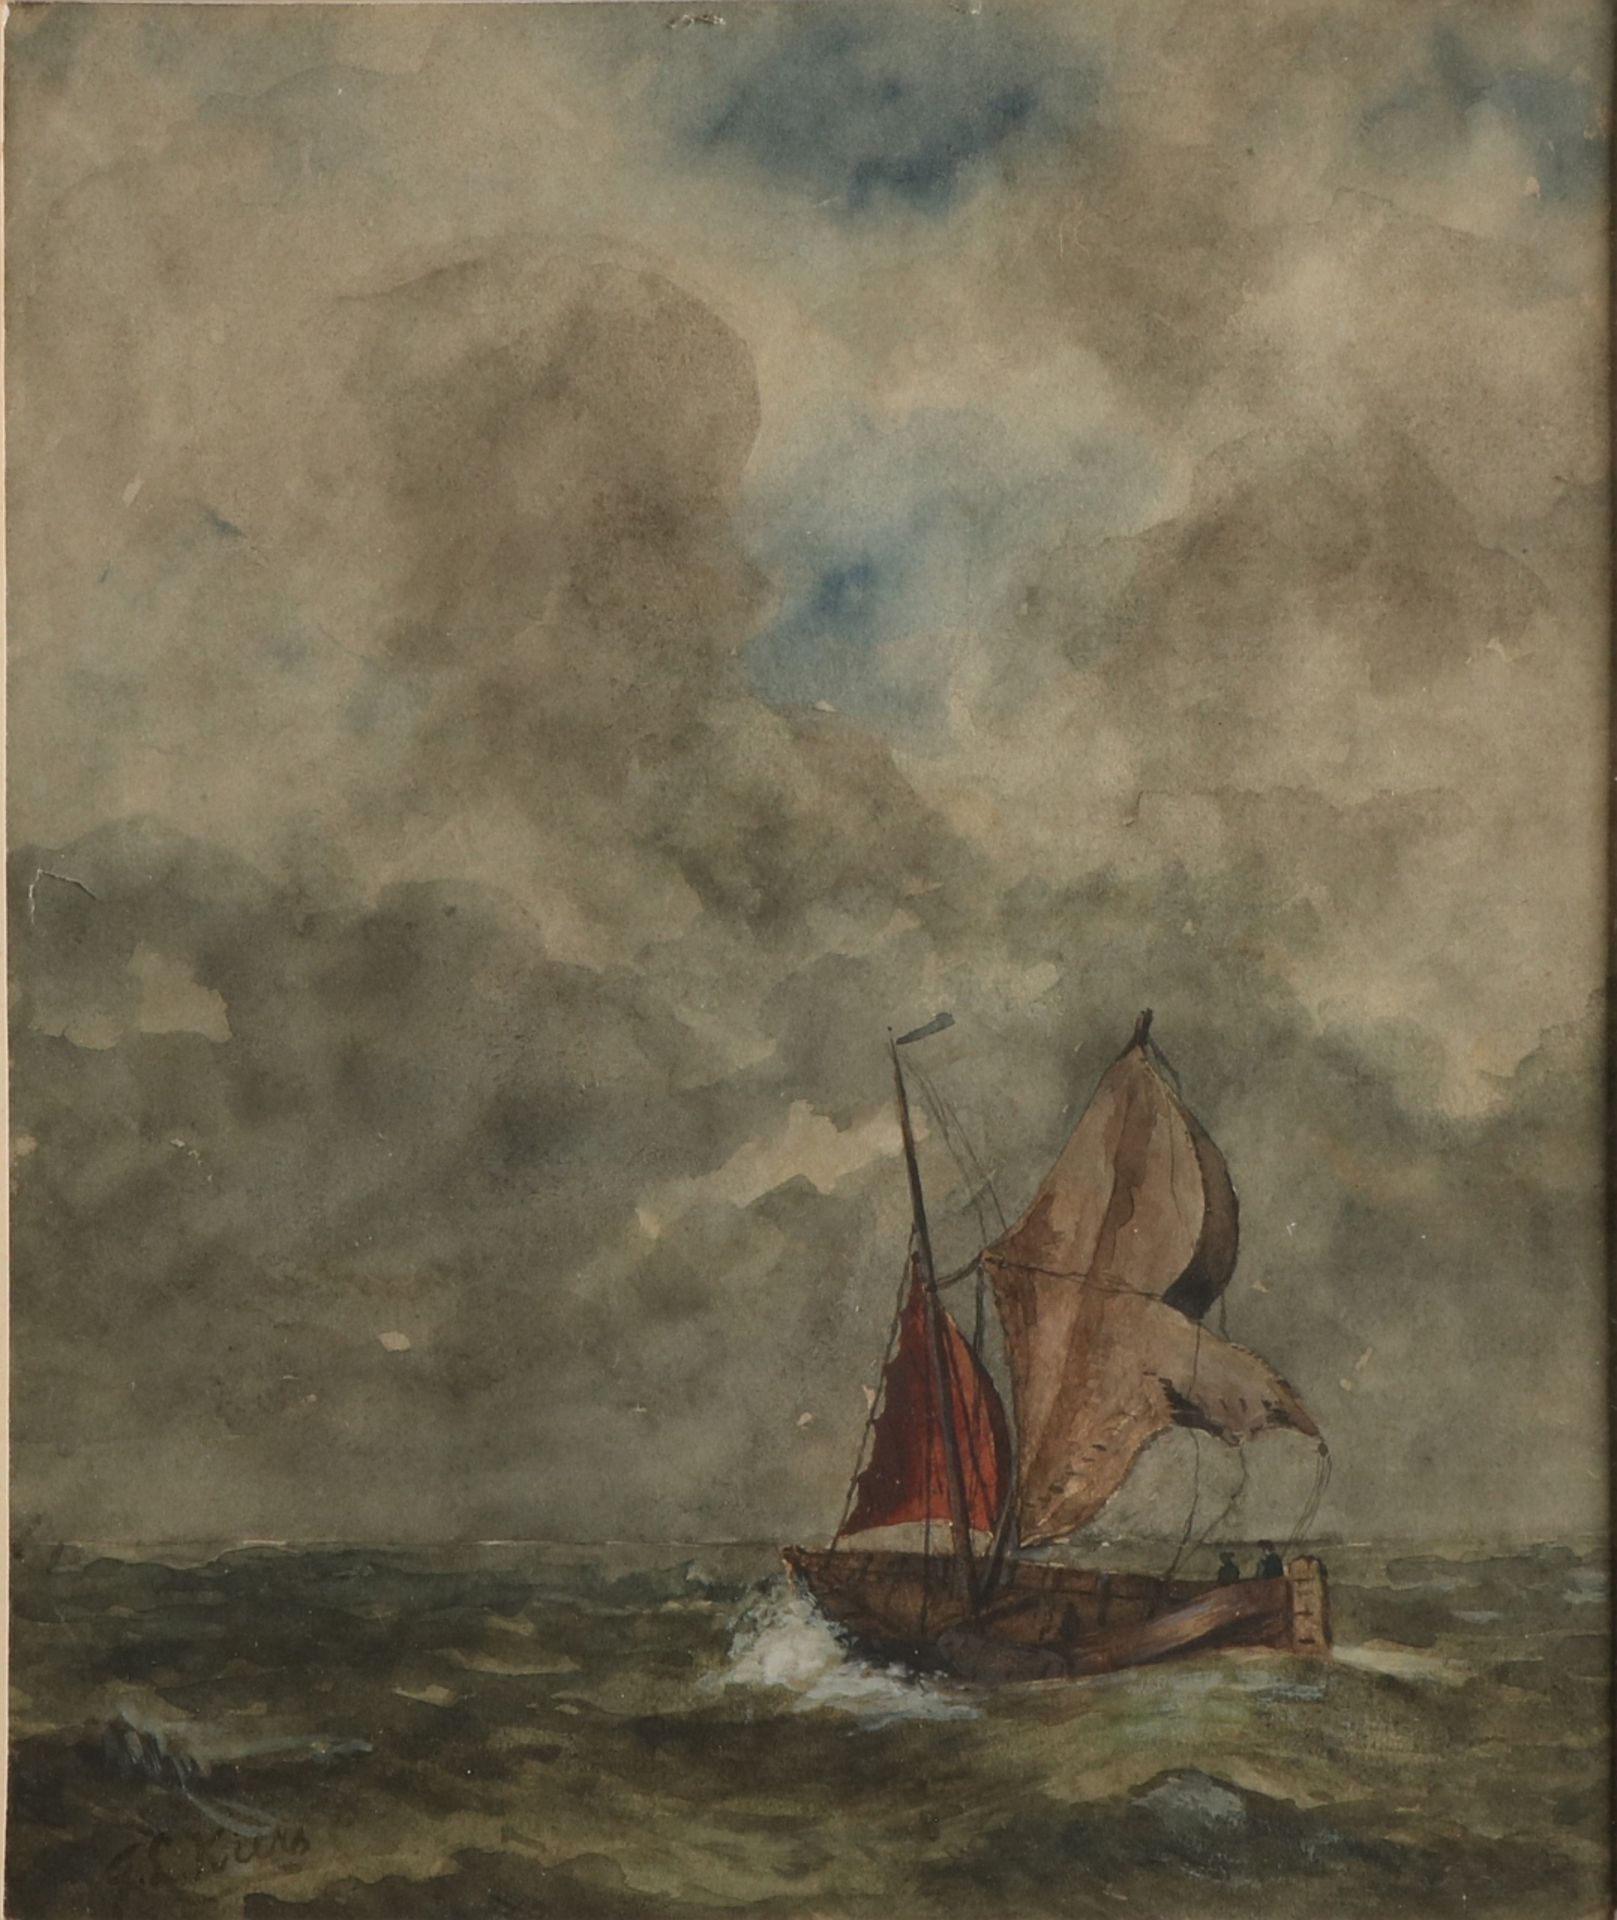 GL Kiers. 1838 - 1916. Fischerboot mit Figuren auf hoher See. Aquarell auf Papier. Abmessungen: